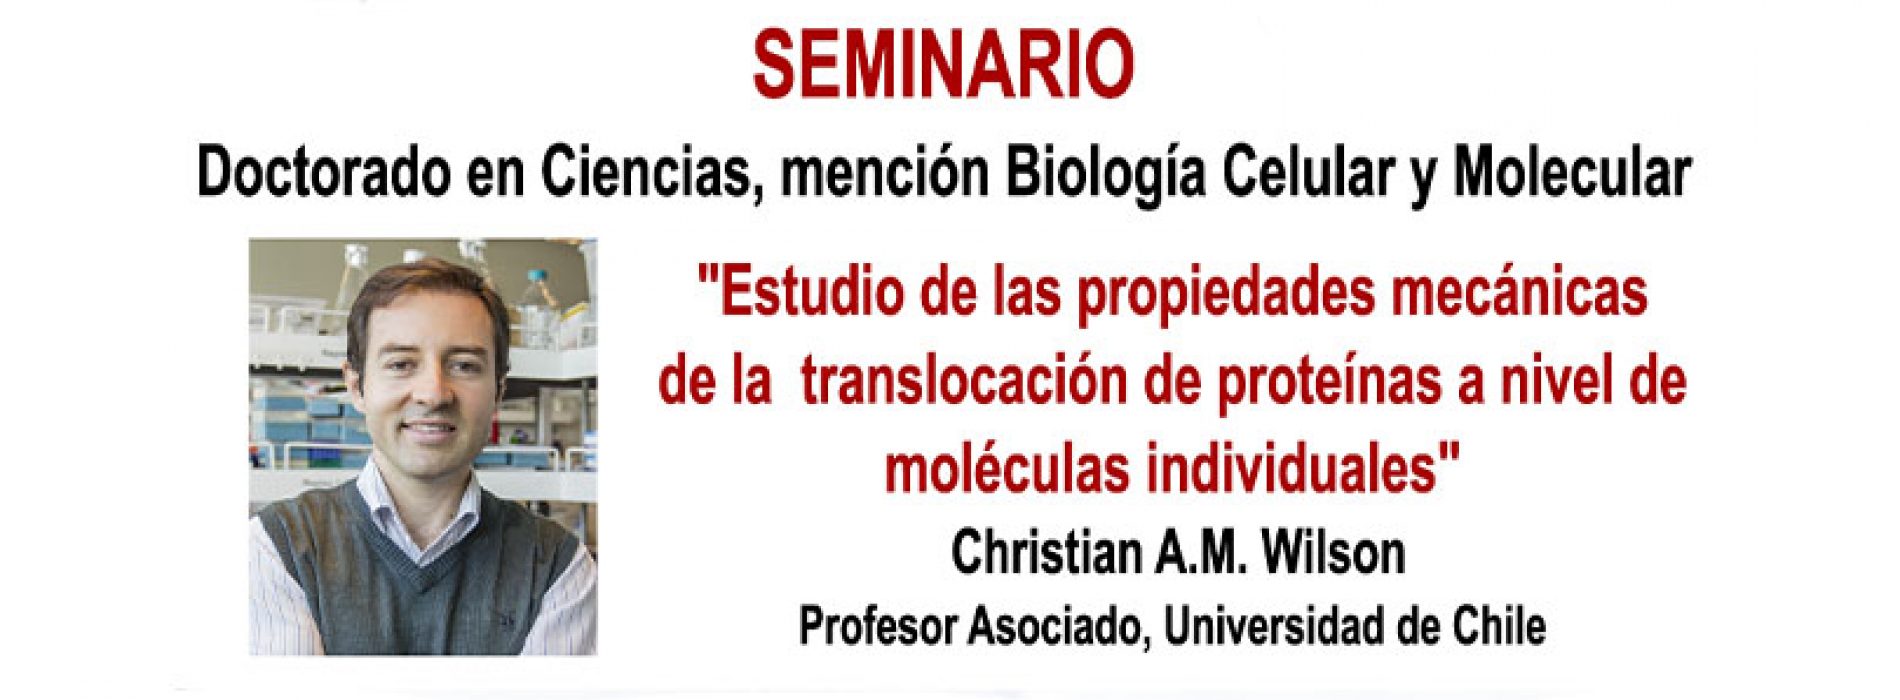 Seminario «Estudio de las propiedades mecánicas de la translocación de proteínas a nivel de moléculas individuales»